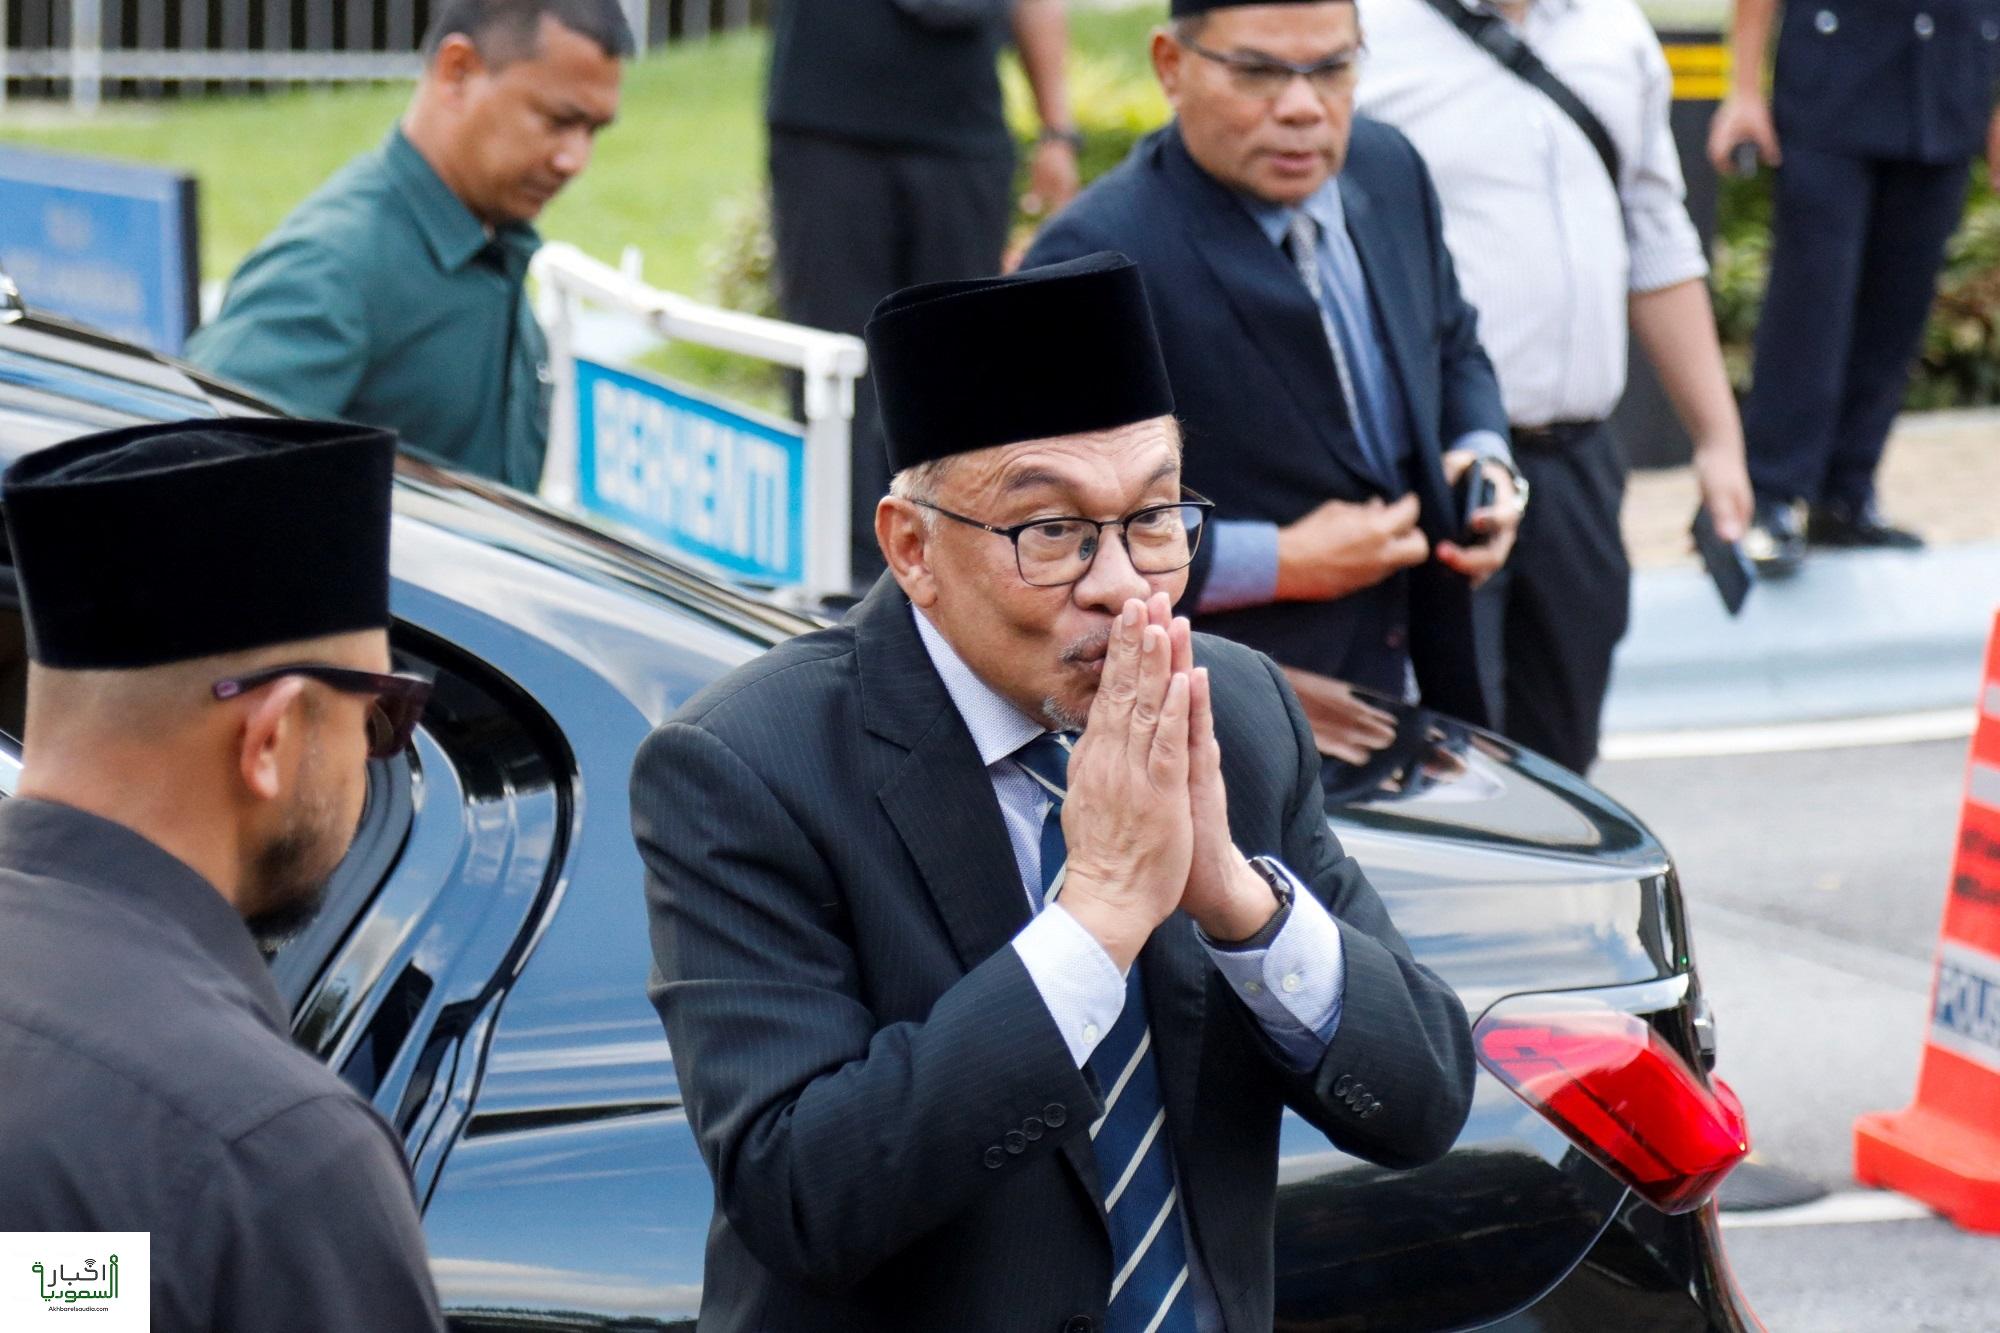 تعيين أنور إبراهيم رئيسًا للوزراء في ماليزيا بعد فشل الإنتخابات